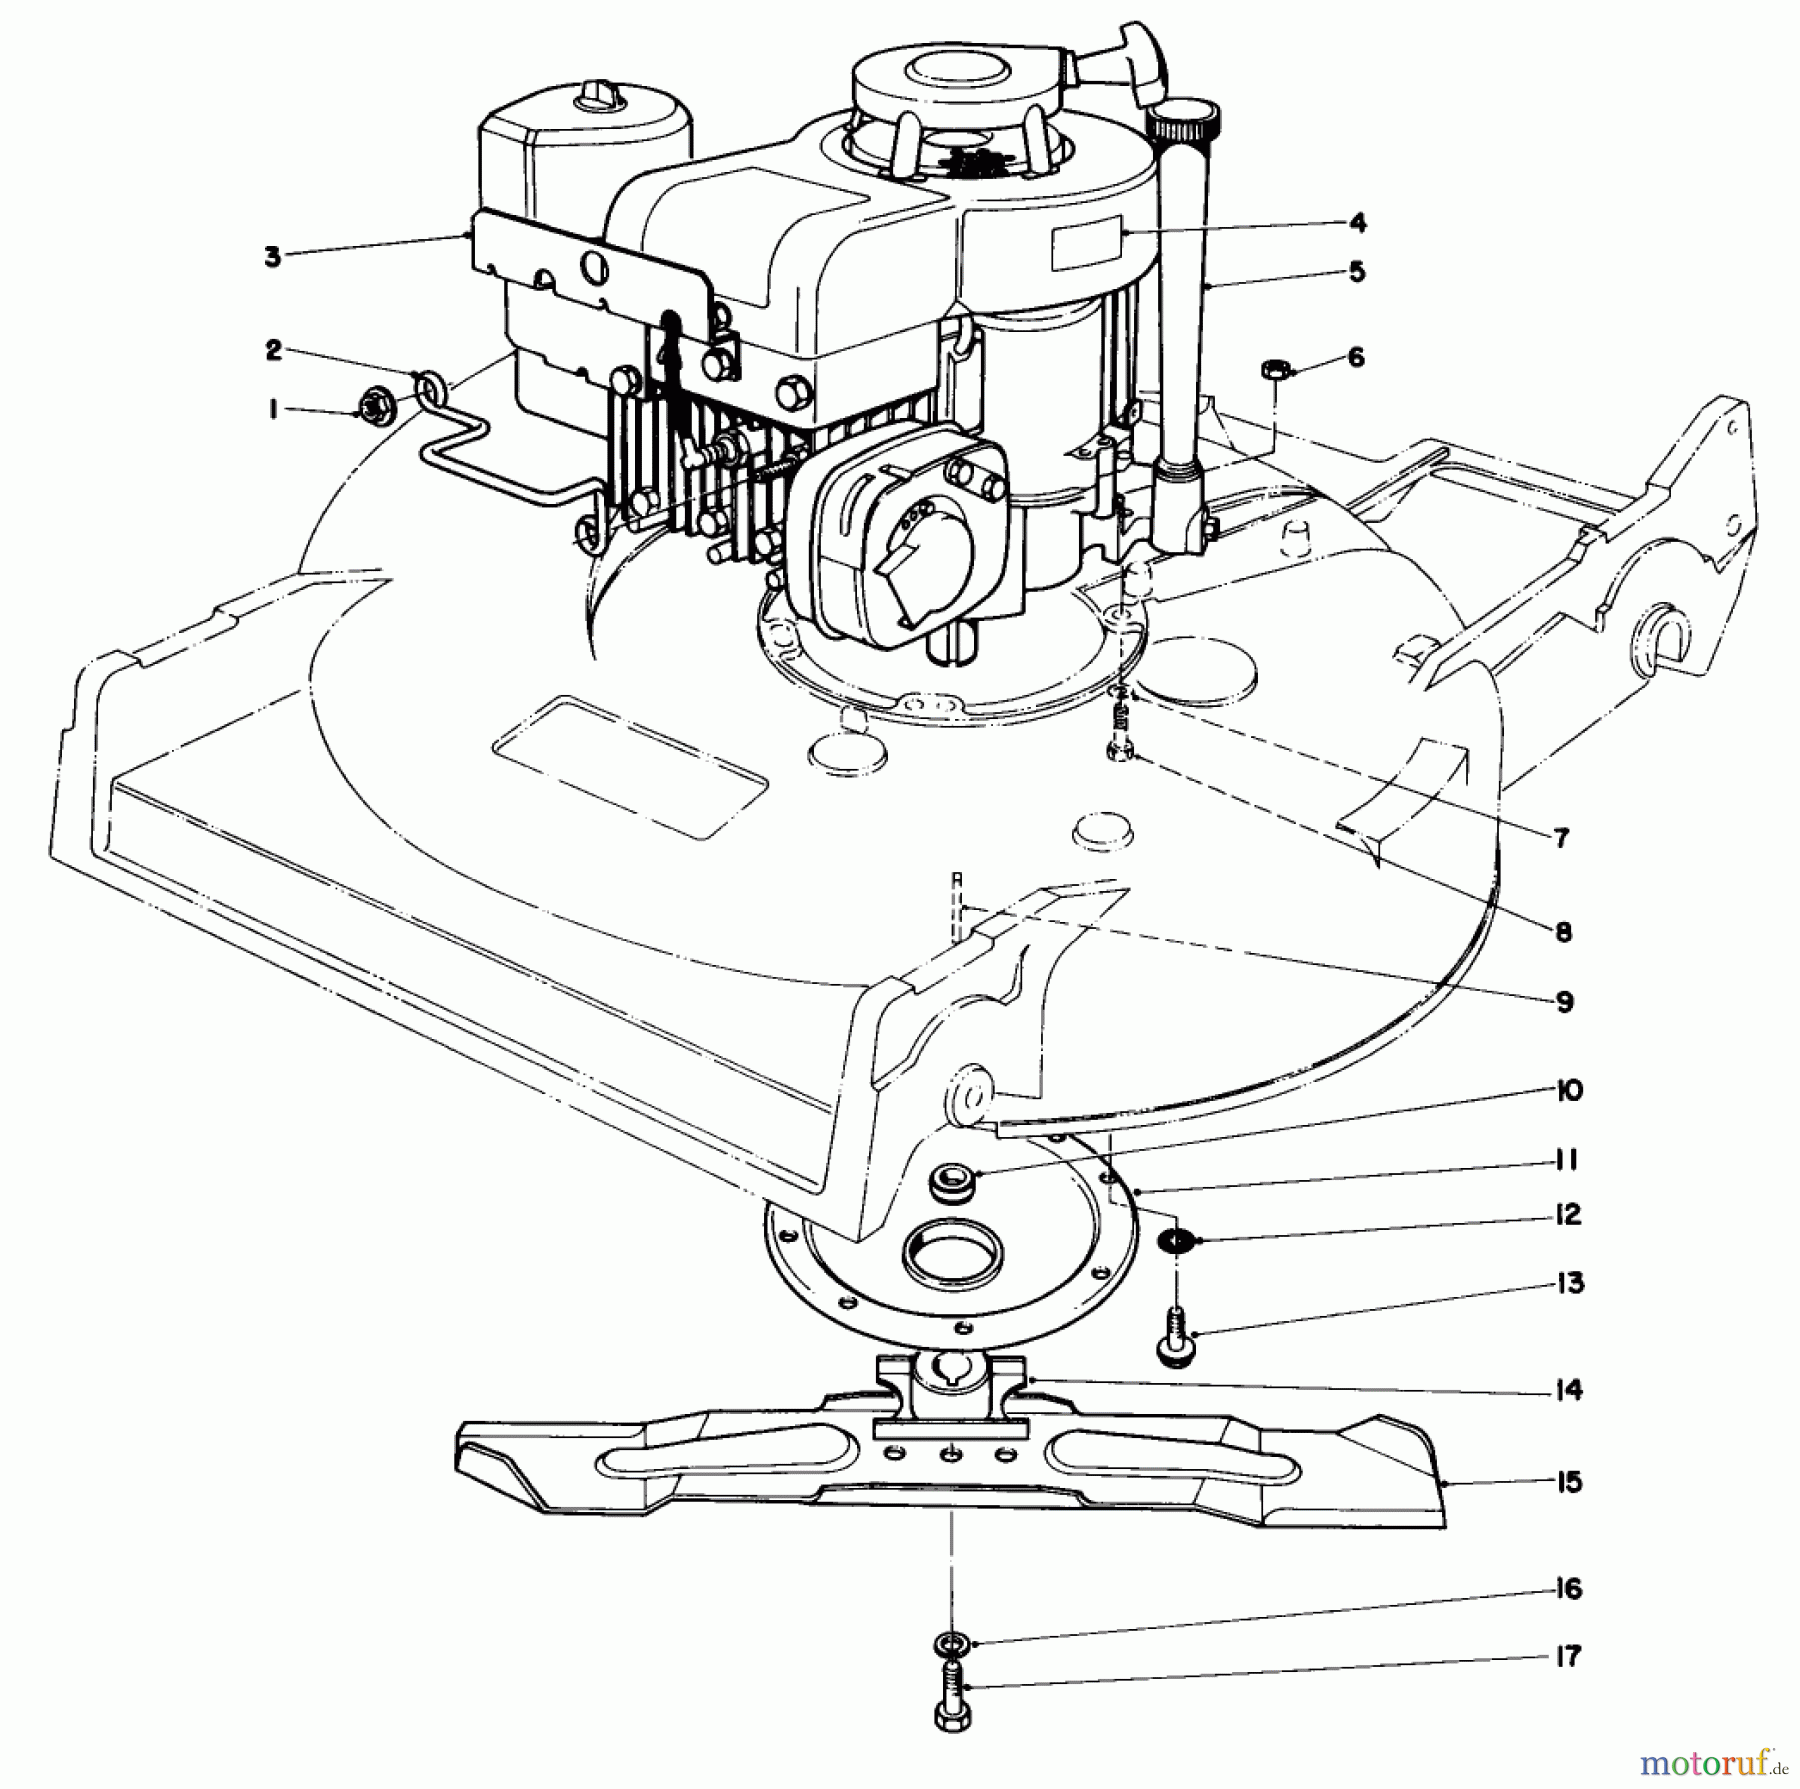  Toro Neu Mowers, Walk-Behind Seite 2 22020 - Toro Lawnmower, 1985 (5000001-5999999) ENGINE ASSEMBLY (MODEL 22015)